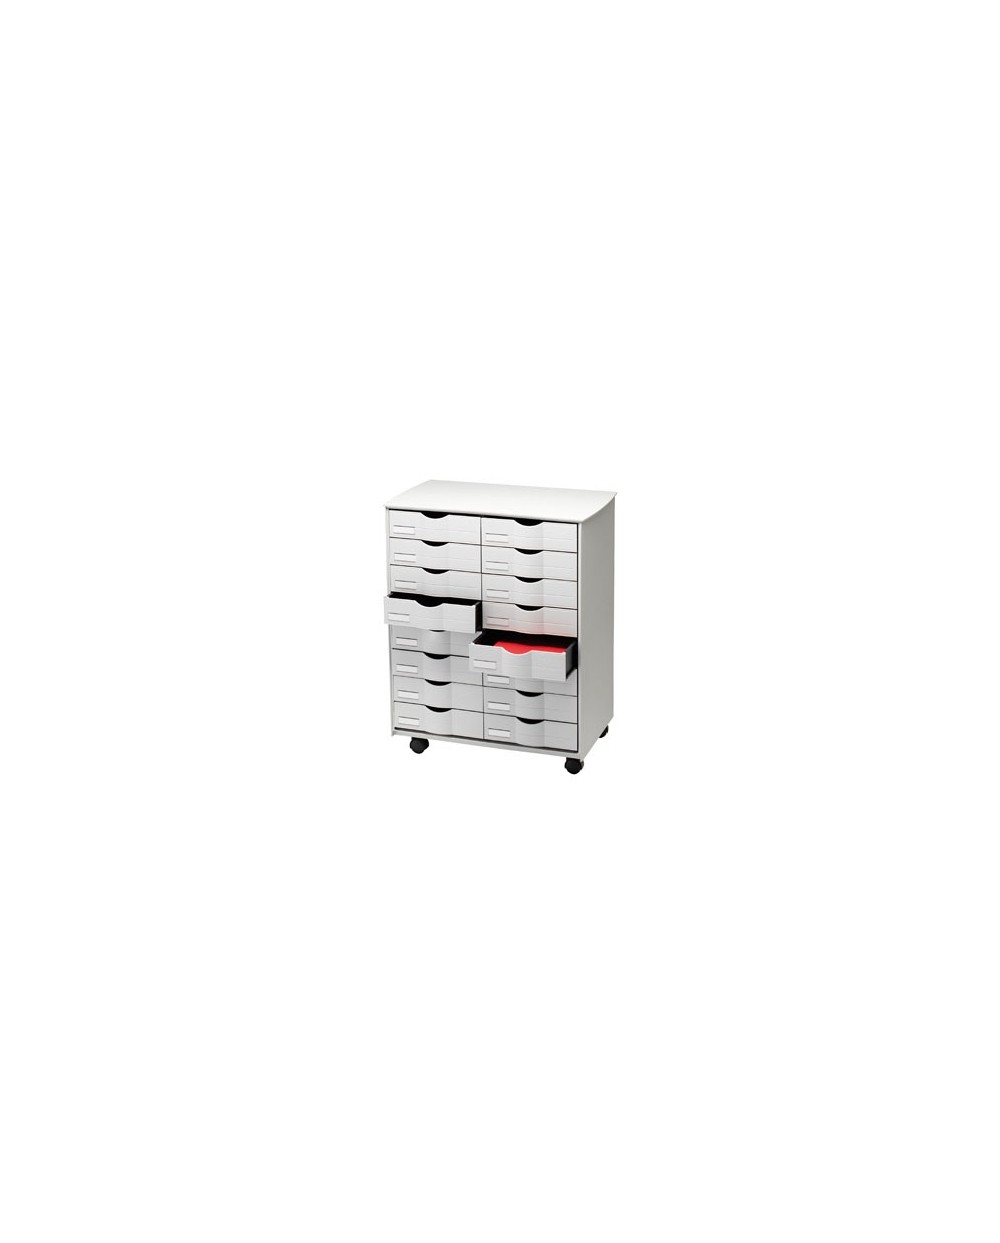 Mueble auxiliar fast paperflow para oficina negro 16 cajones en 2 columnas gris5x382 715x58x343 cm